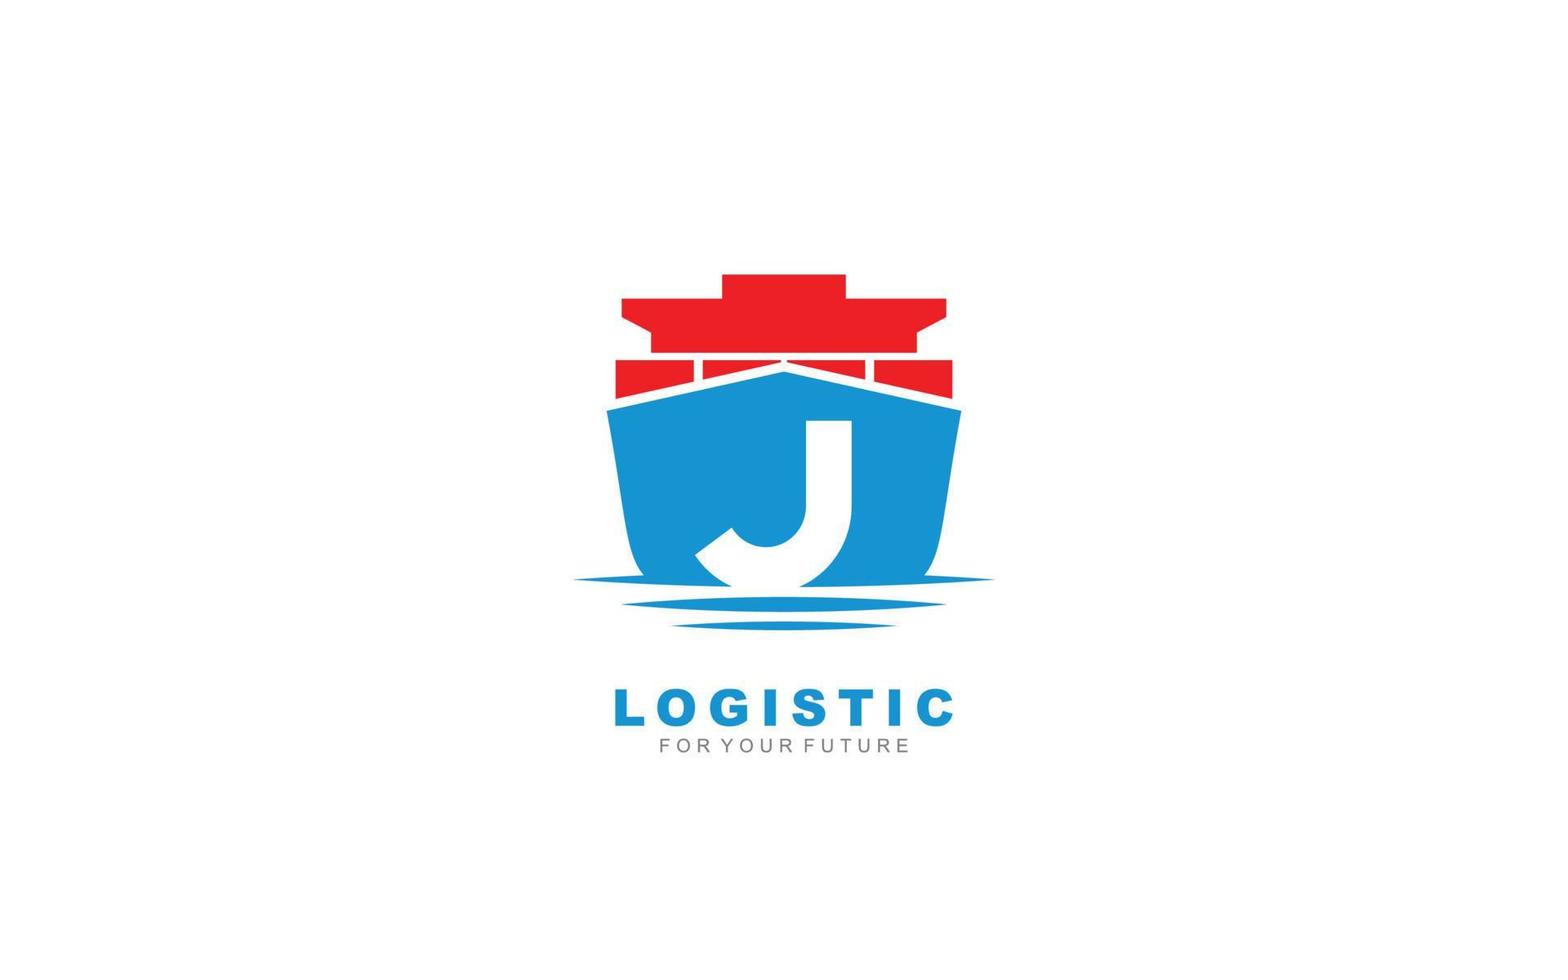 j Logo Logistik für Markenunternehmen. Versandvorlagen-Vektorillustration für Ihre Marke. vektor